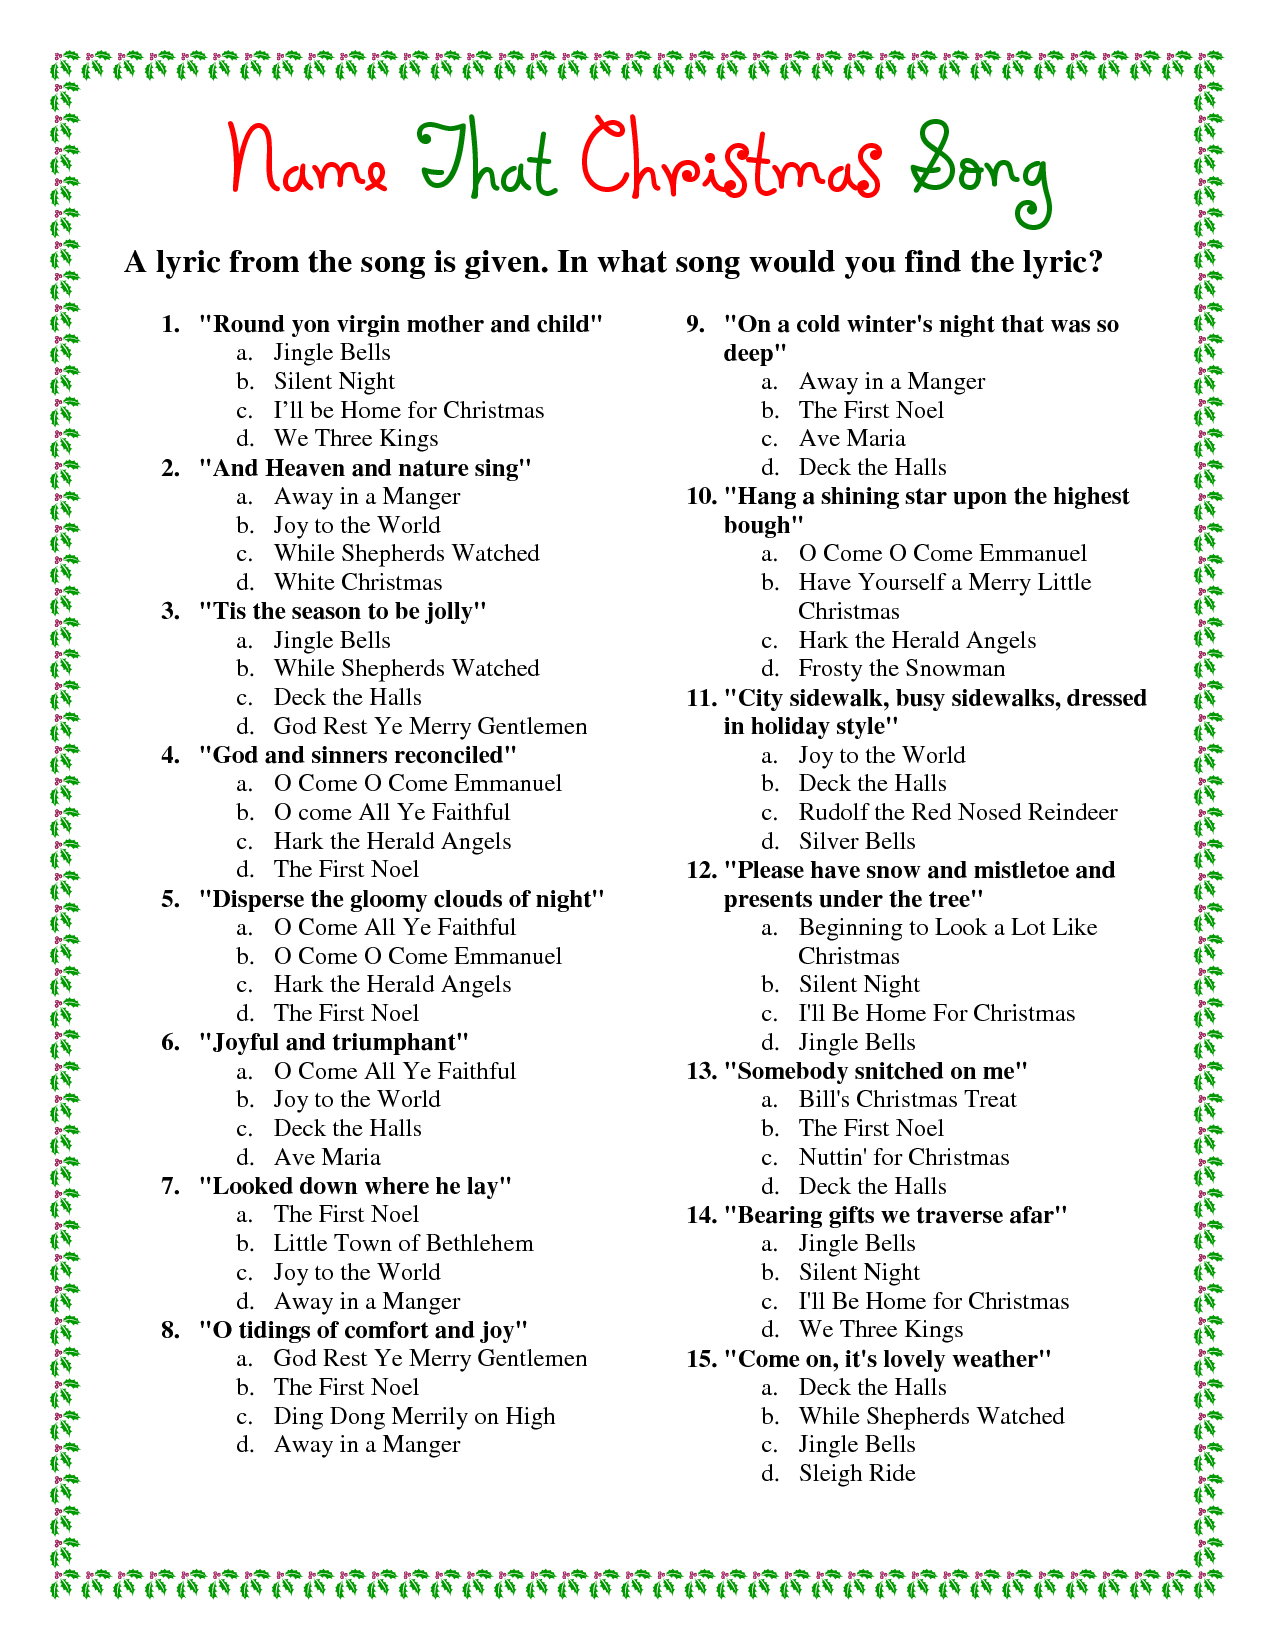 Printable+Christmas+Song+Trivia | Christmas | Christmas Trivia - Christmas Song Lyrics Game Free Printable